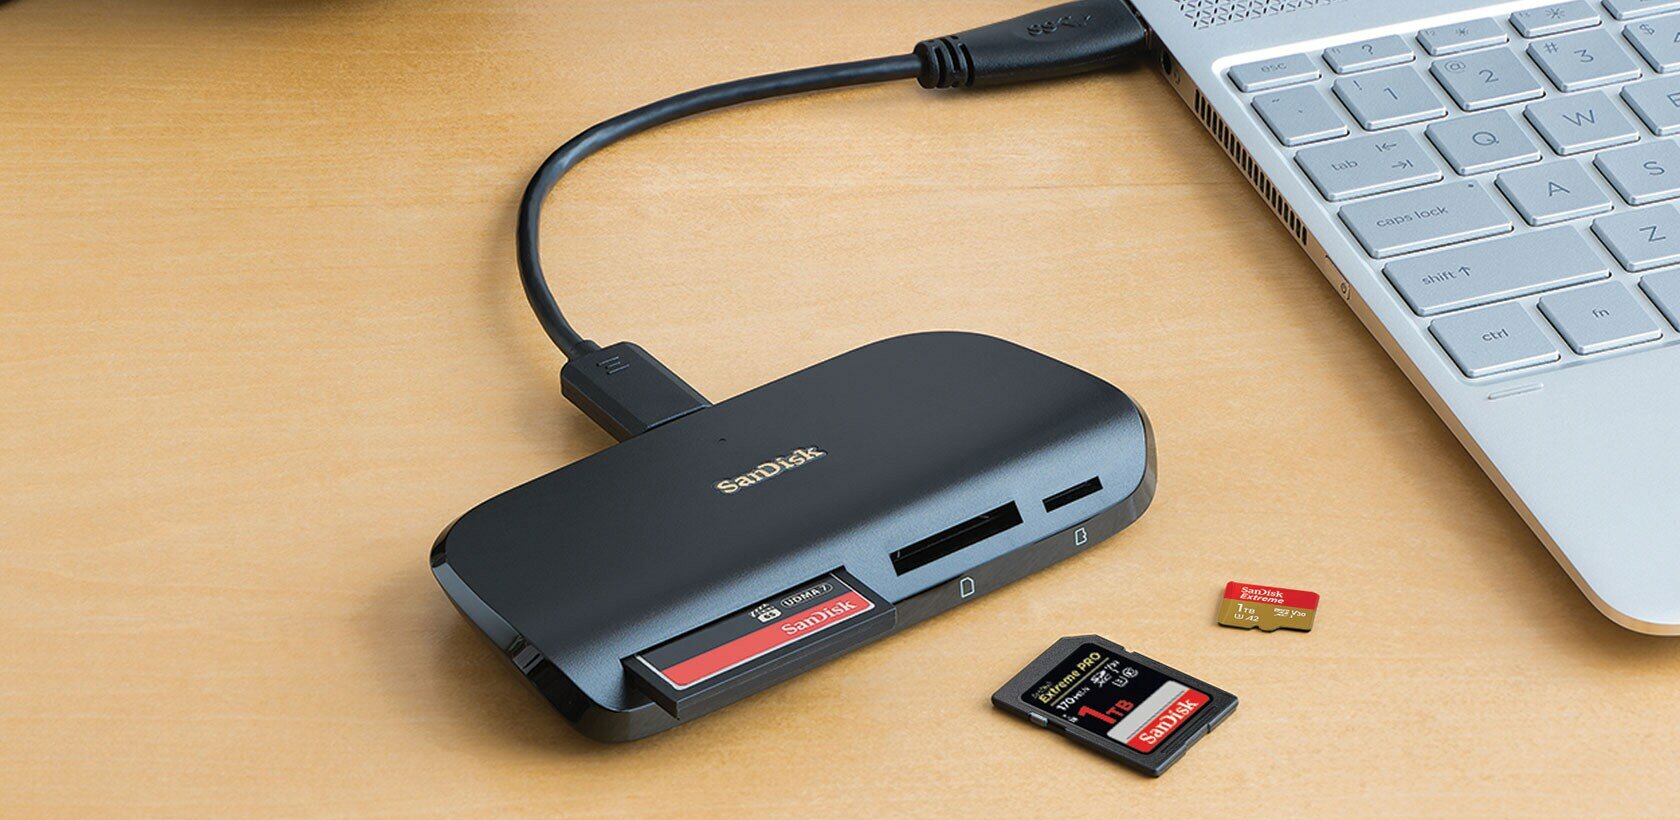 SanDisk ImageMate PRO - card reader - USB 3.0